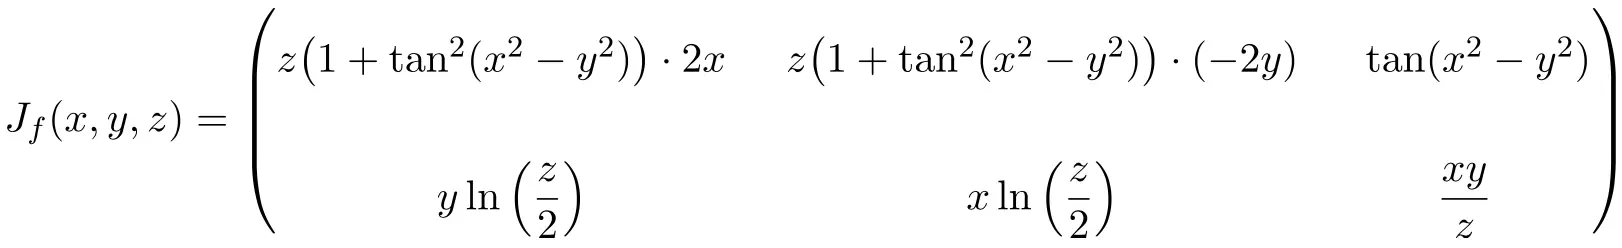 雅可比矩阵求解 3 个变量的练习